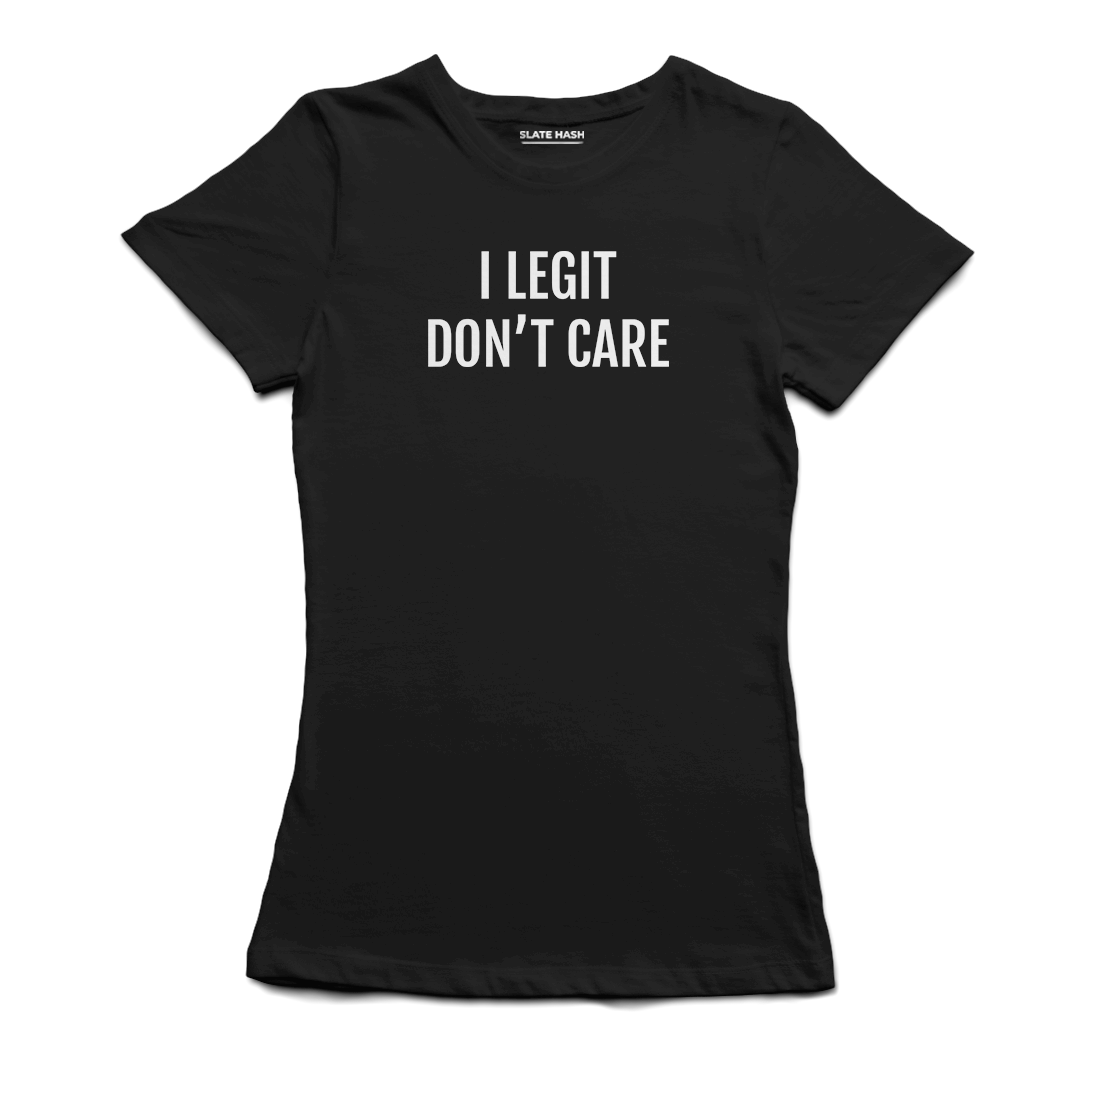 I Legit don't care T-Shirt (Black)